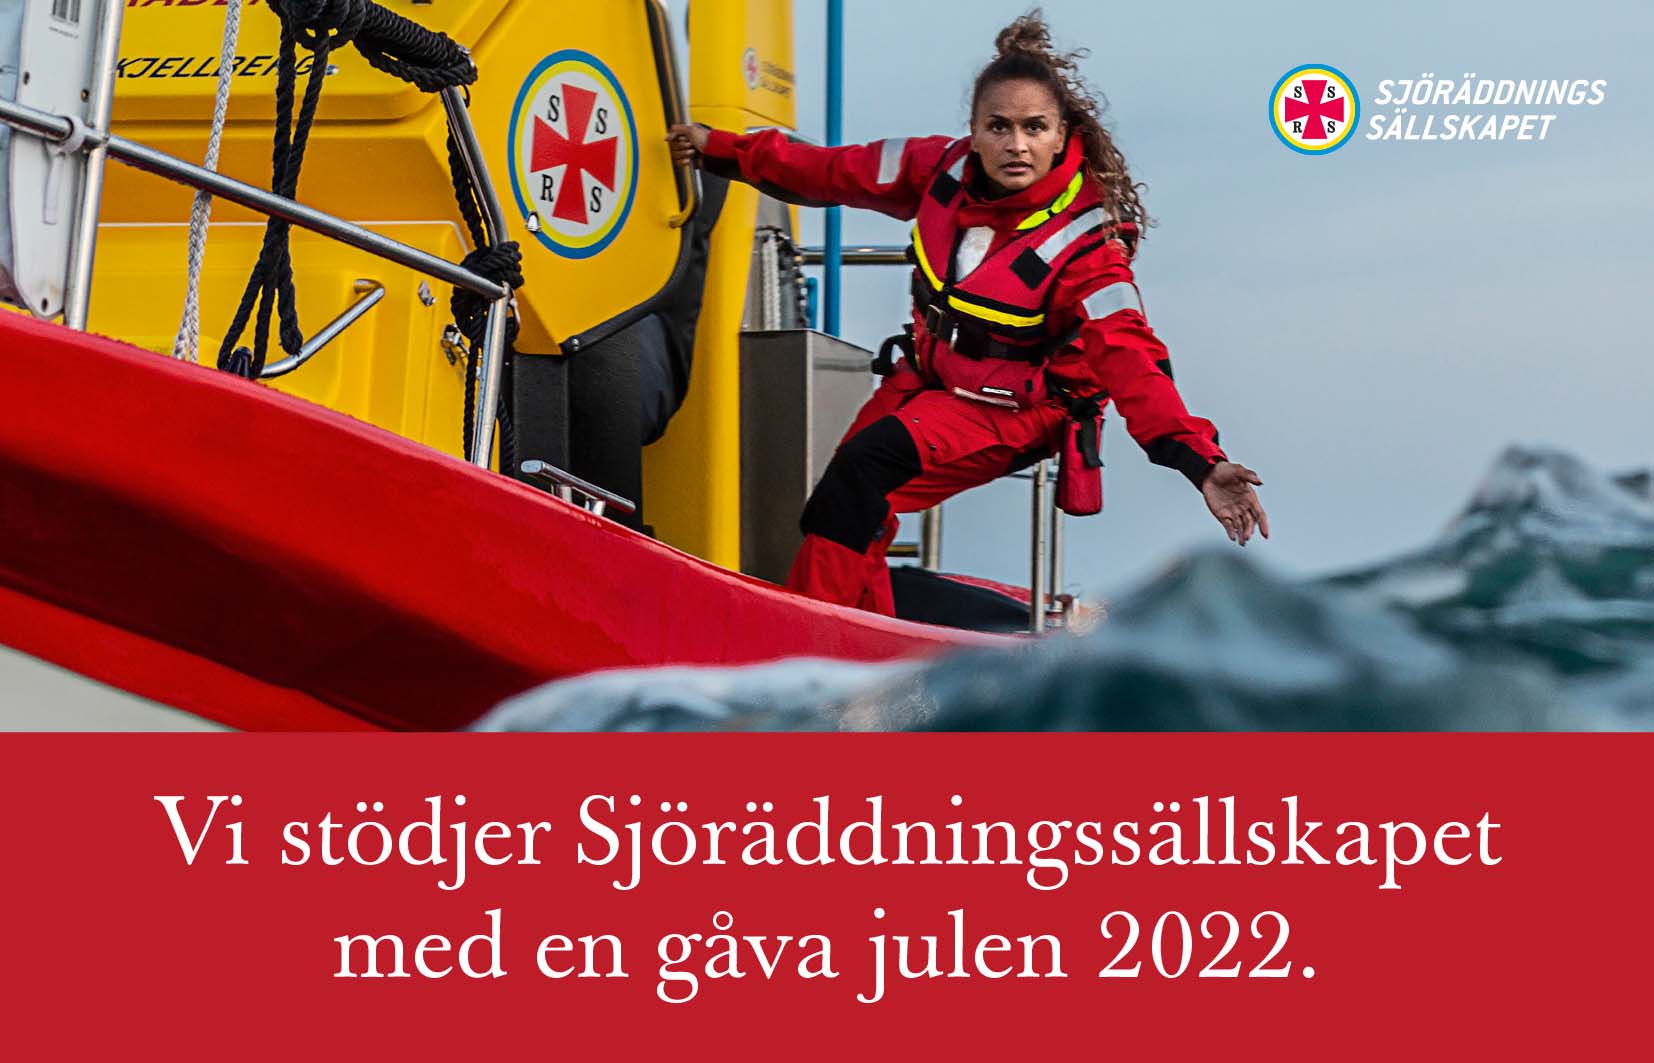 Vi stödjer Sjöräddningssällskapet med en gåva julen 2022